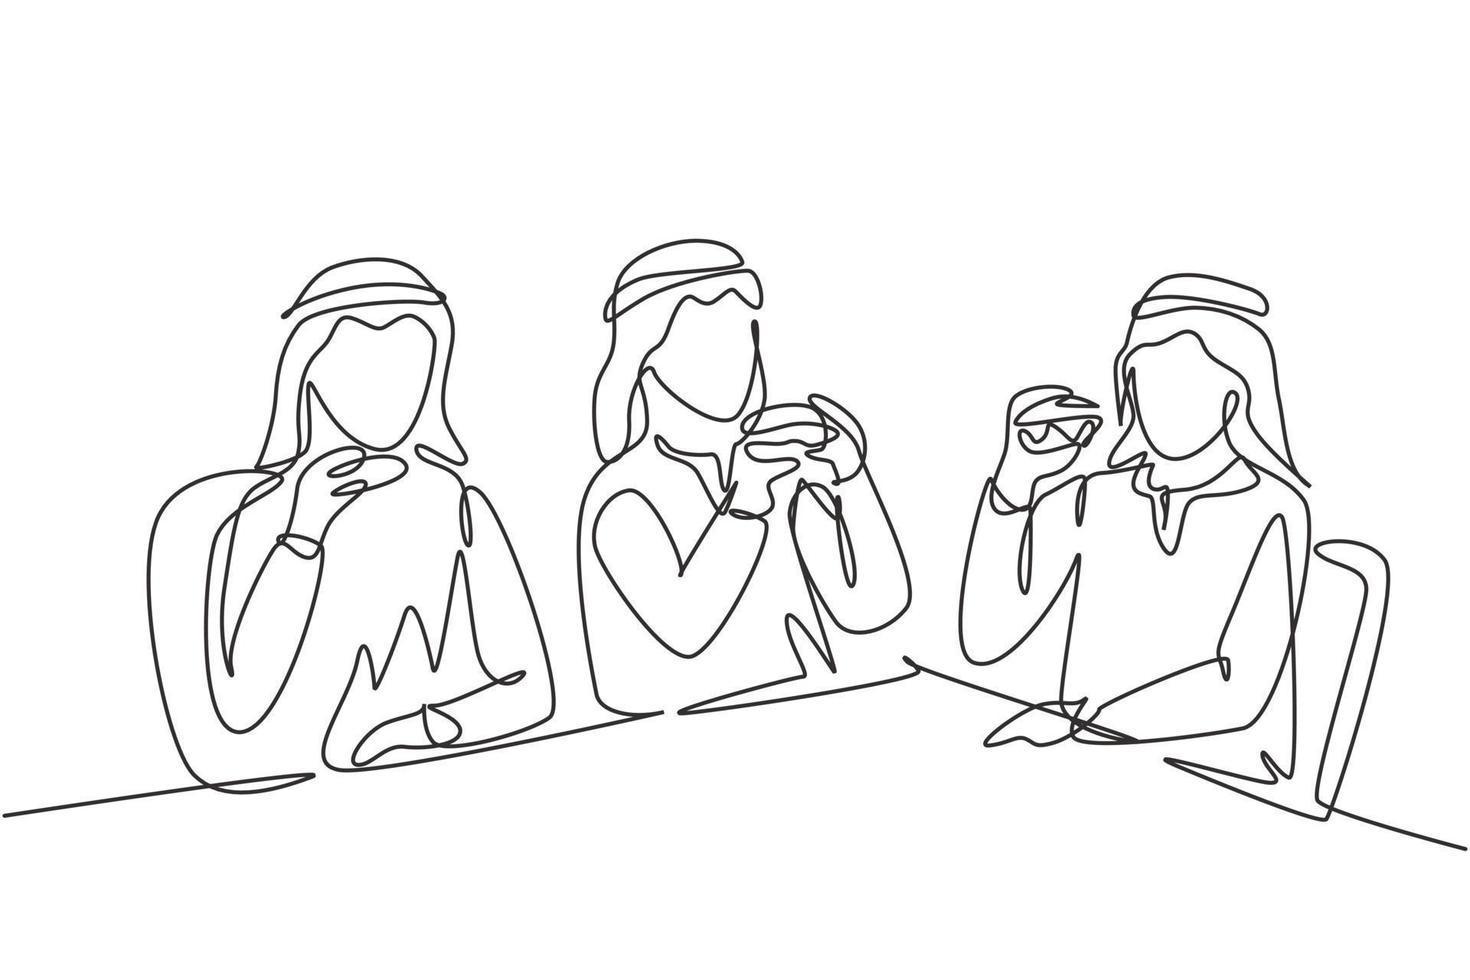 una sola linea che disegna insieme giovani uomini arabi. amici che mangiano un pasto fast food nel ristorante. persone sedute a cenare hamburger. illustrazione vettoriale grafica di disegno di disegno di linea continua